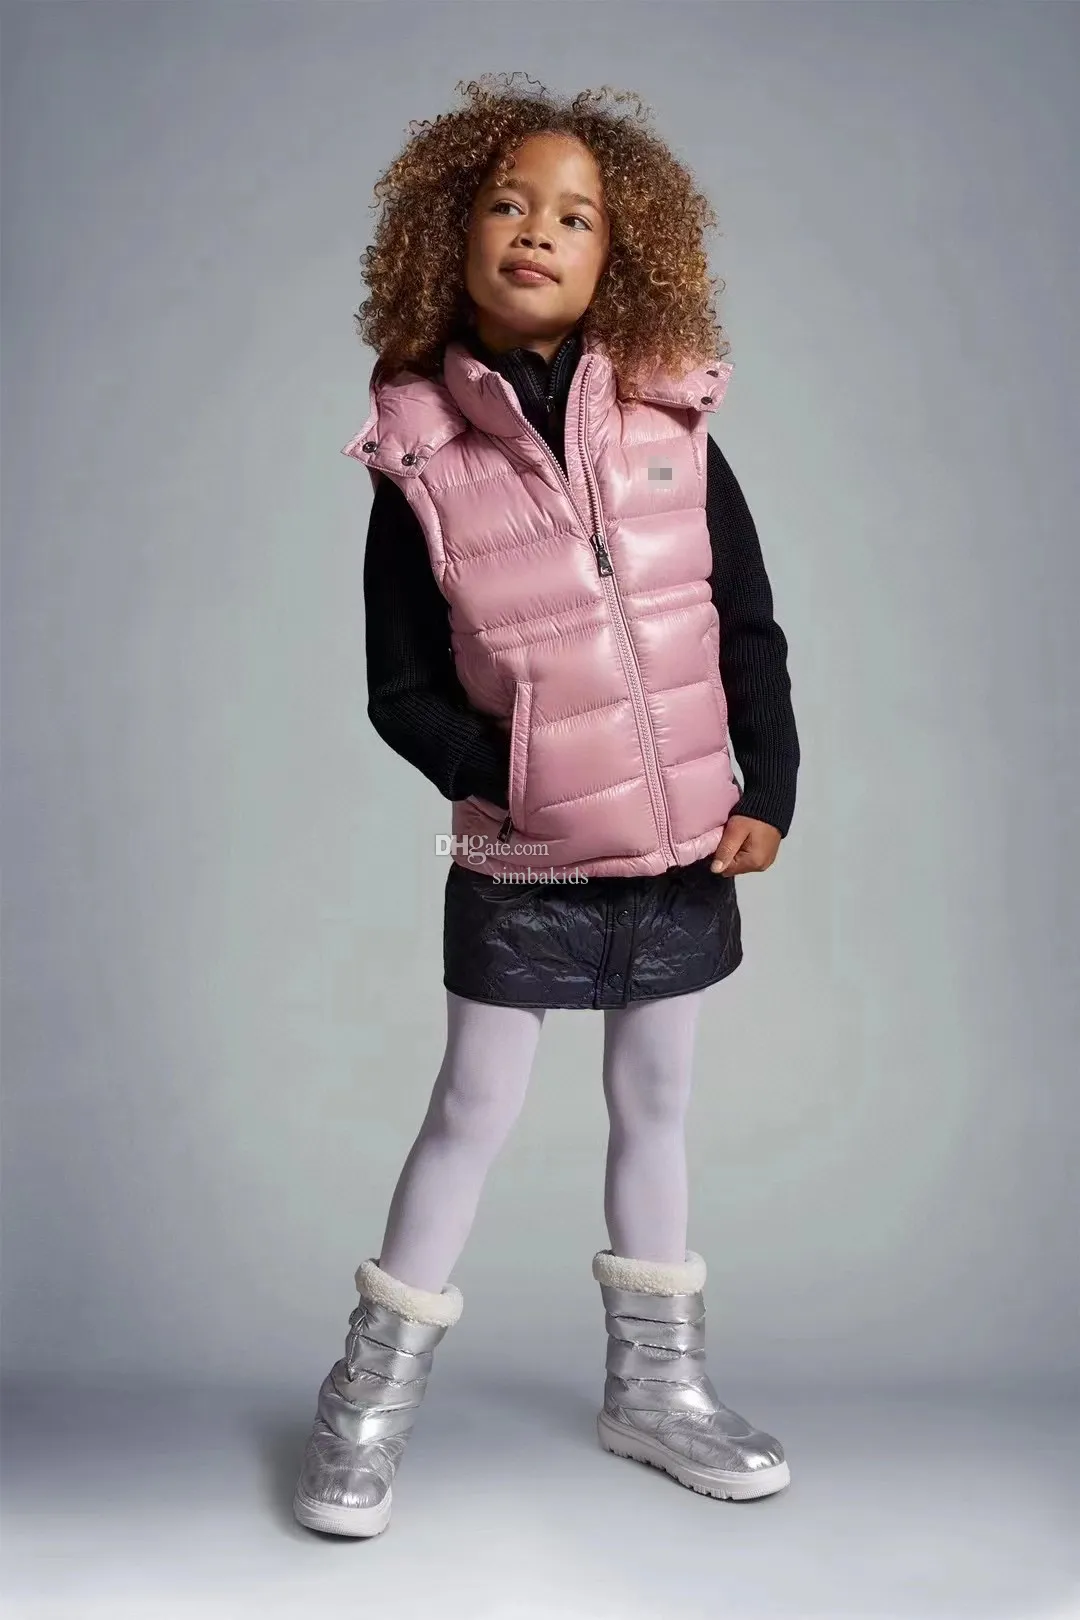 MONCL2023kids Жилет-пуховик для мальчиков одежда для девочек дизайнерская одежда детское пальто детская дизайнерская одежда Рождественский подарок первые симбакиды